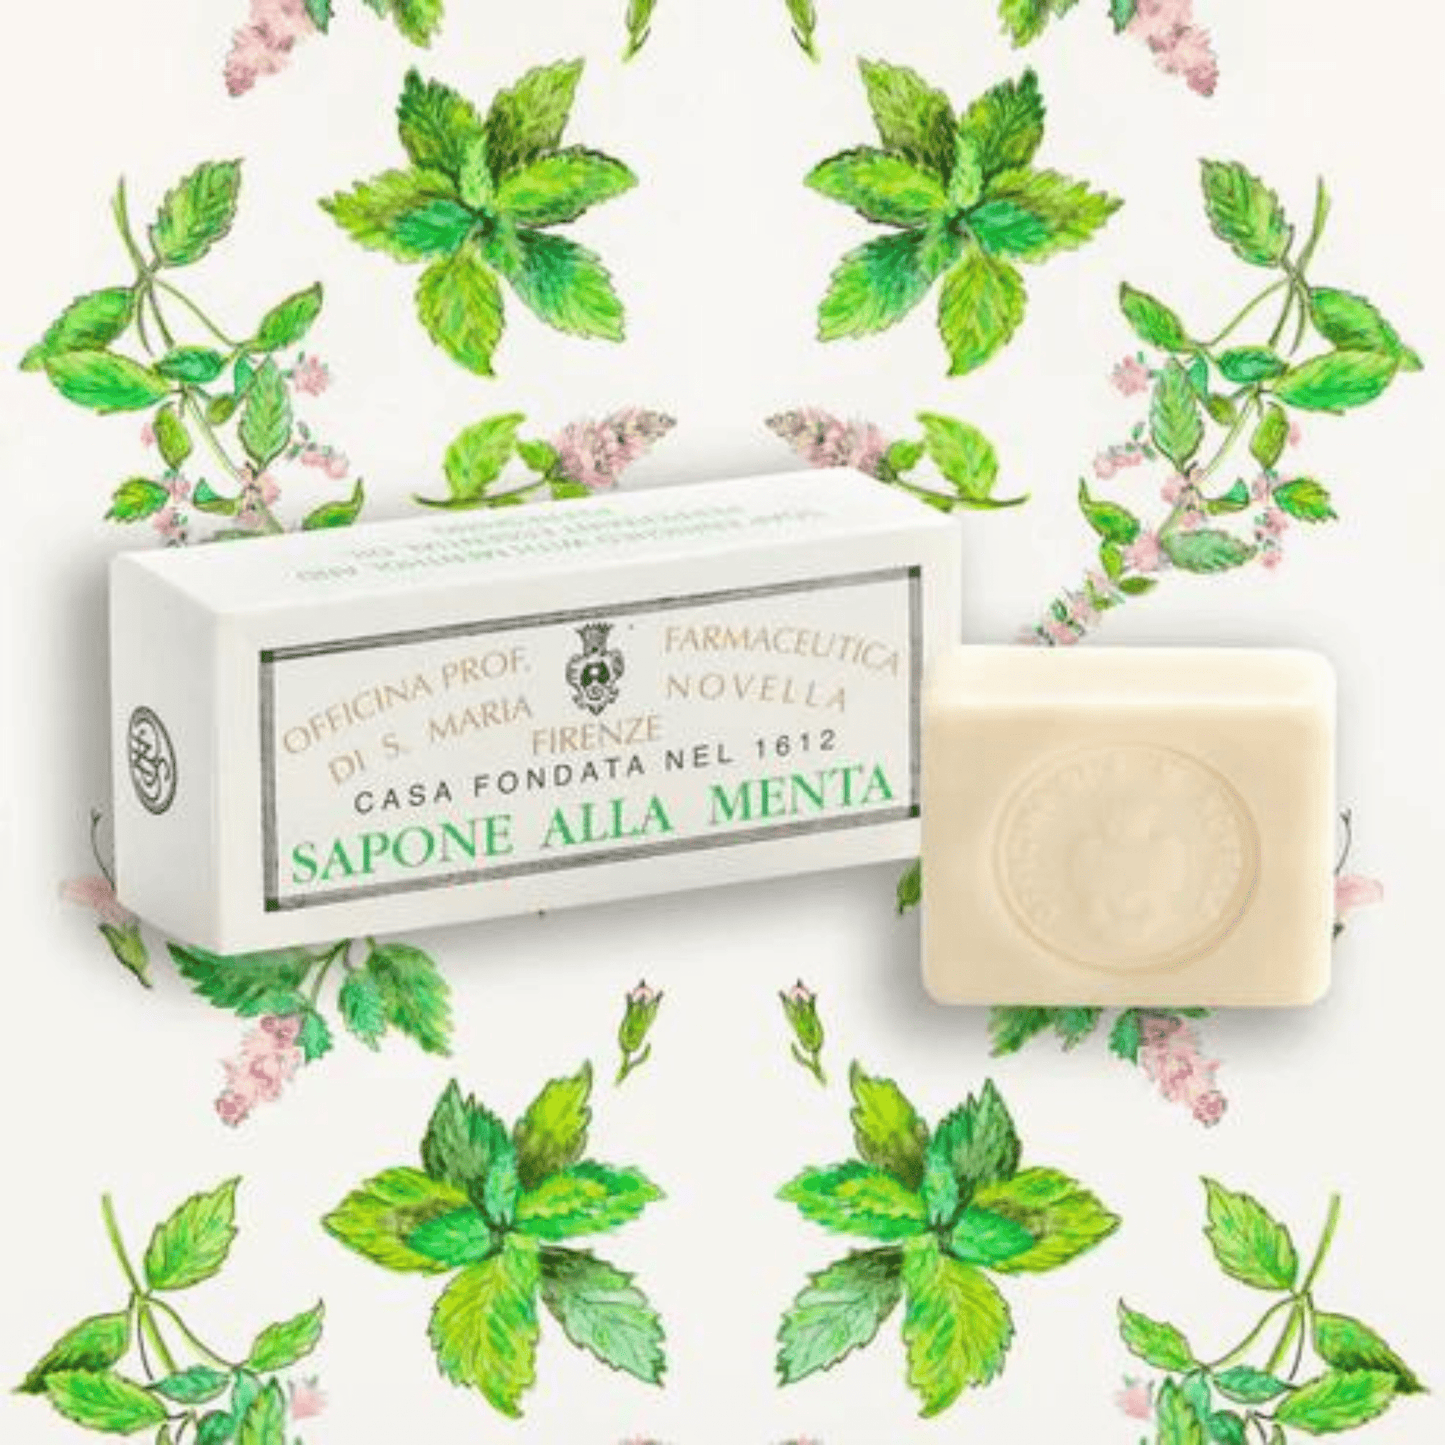 Alternate Image of Mint Soap (Sapone alla Menta) Box of 2 